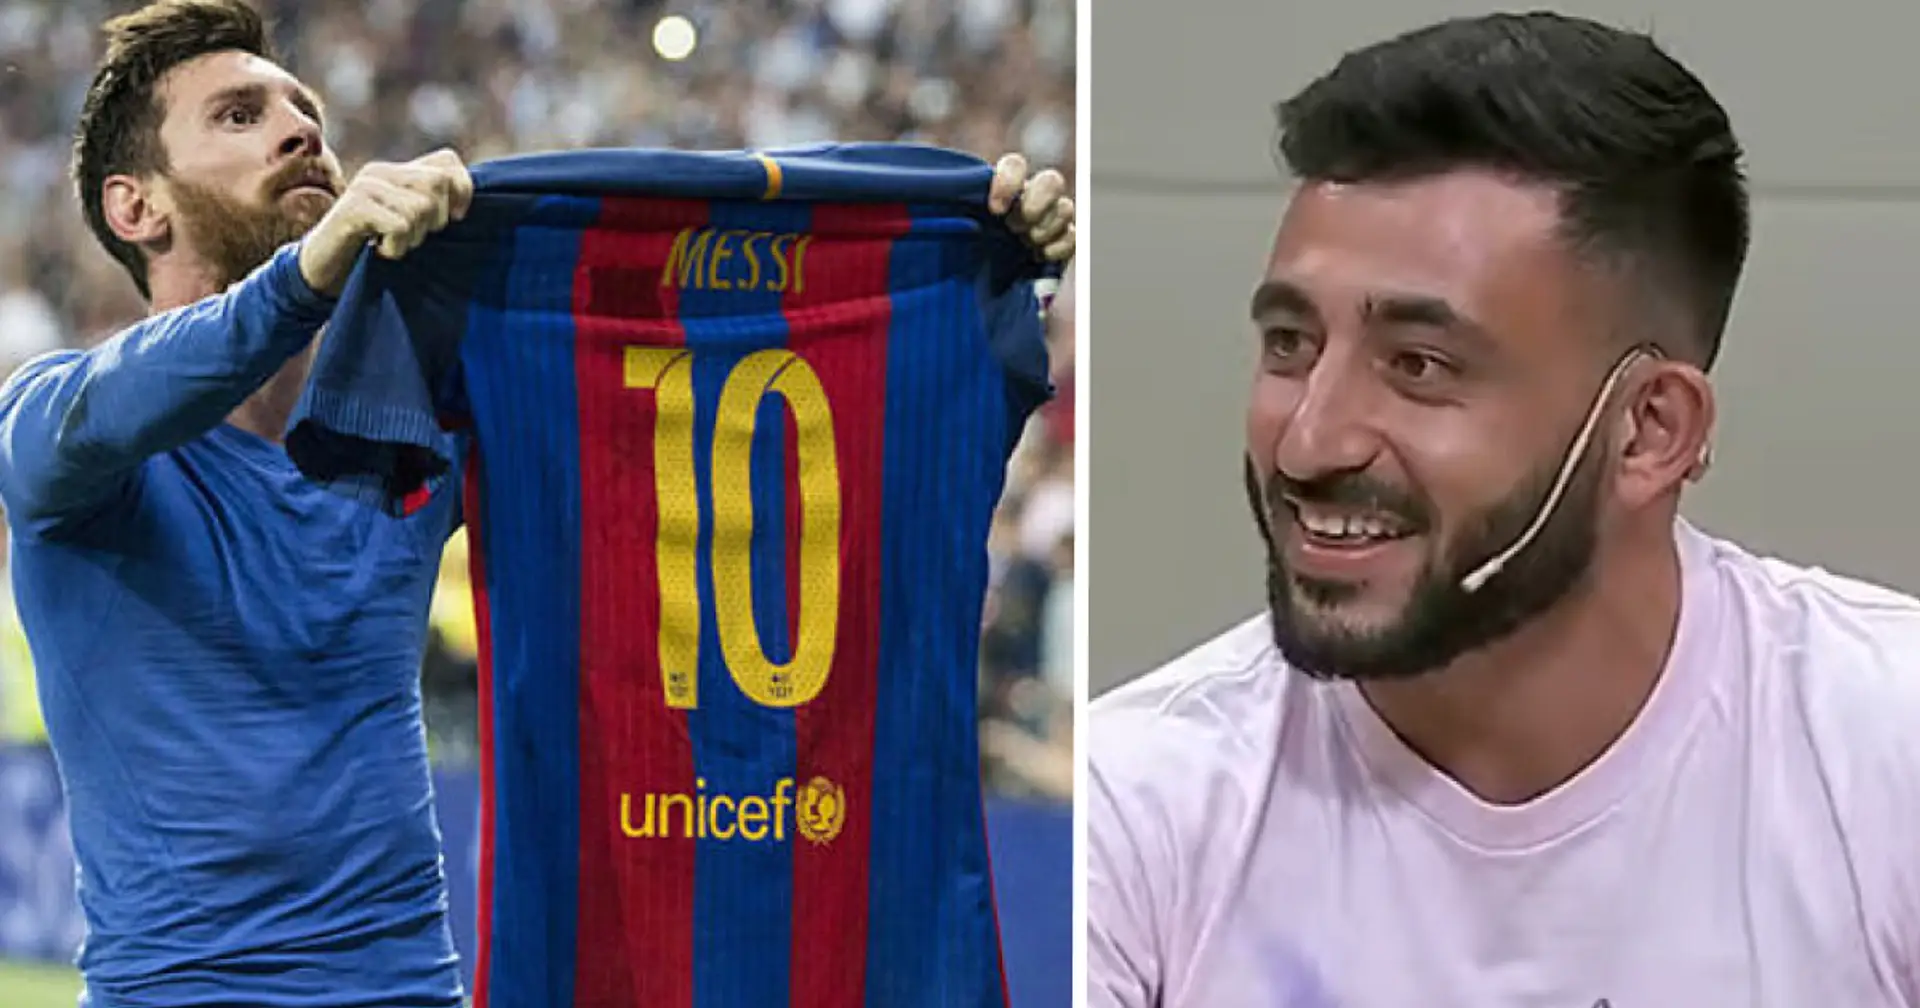 "J'ai dormi avec son maillot non lavé pendant des mois": une ancienne star de la Liga s'exprime sur son obsession pour Messi